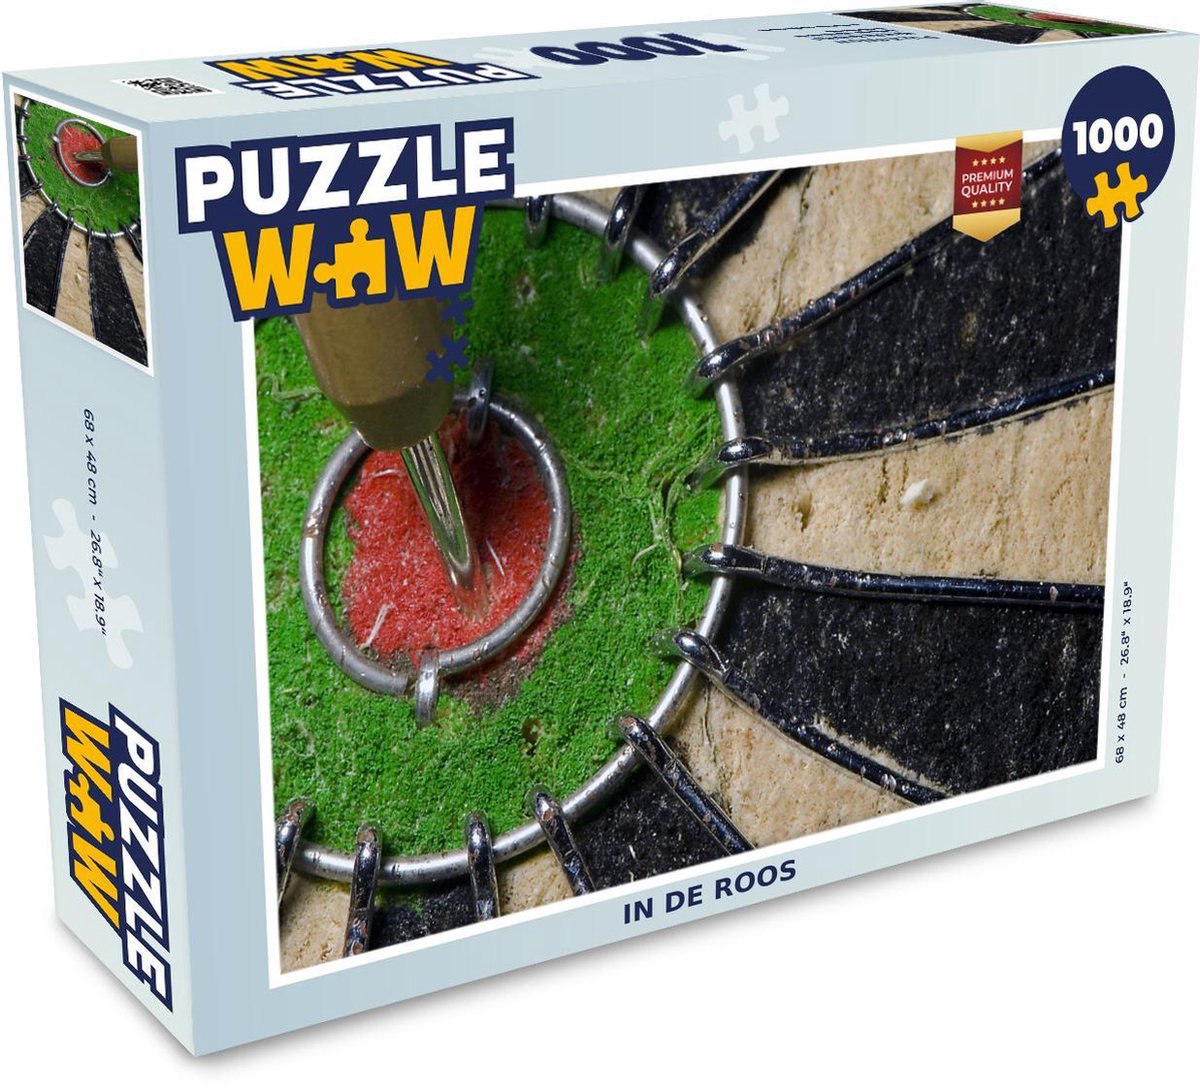 Puzzel 1000 stukjes volwassenen Darten 1000 stukjes - In de roos - PuzzleWow heeft +100000 puzzels